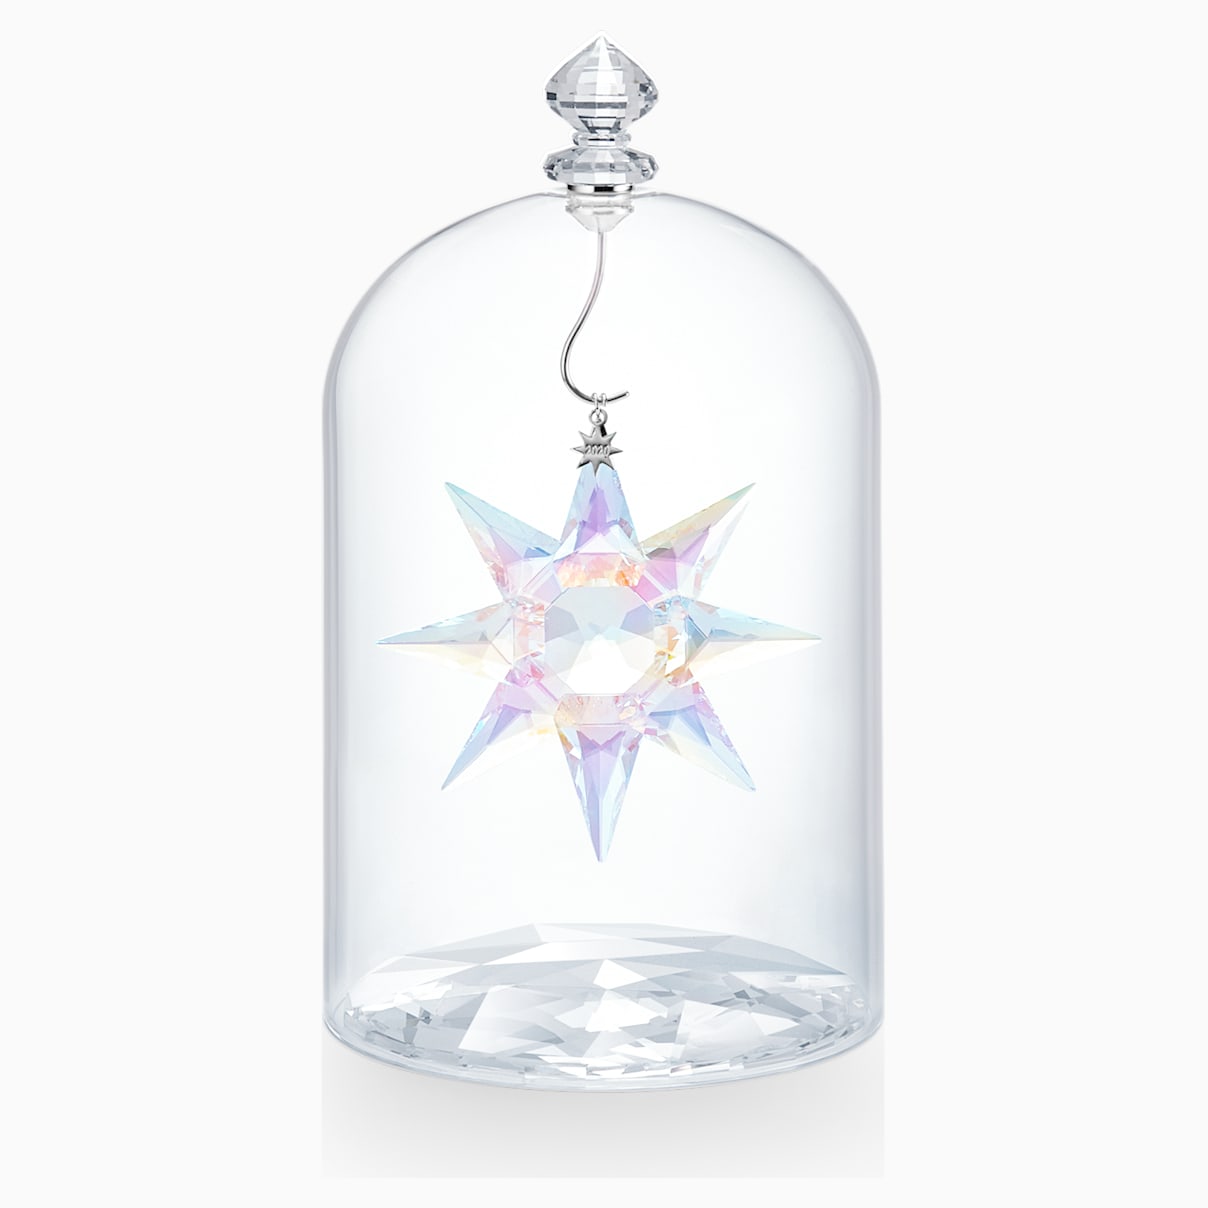  Swarovski Crystal